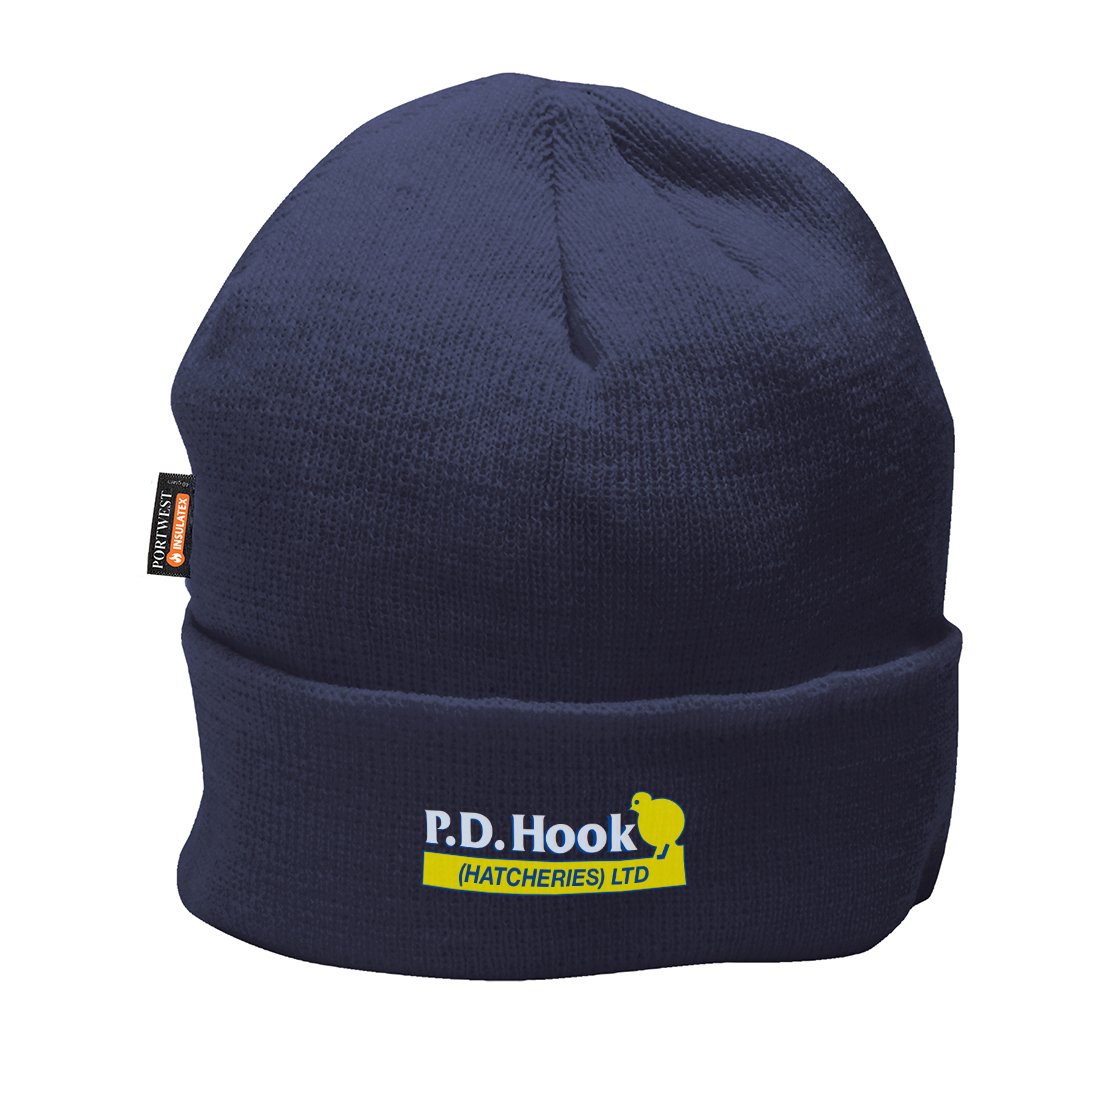 P D Hook (Hatcheries) Ltd - Beanie Hat, Navy, Embroidered